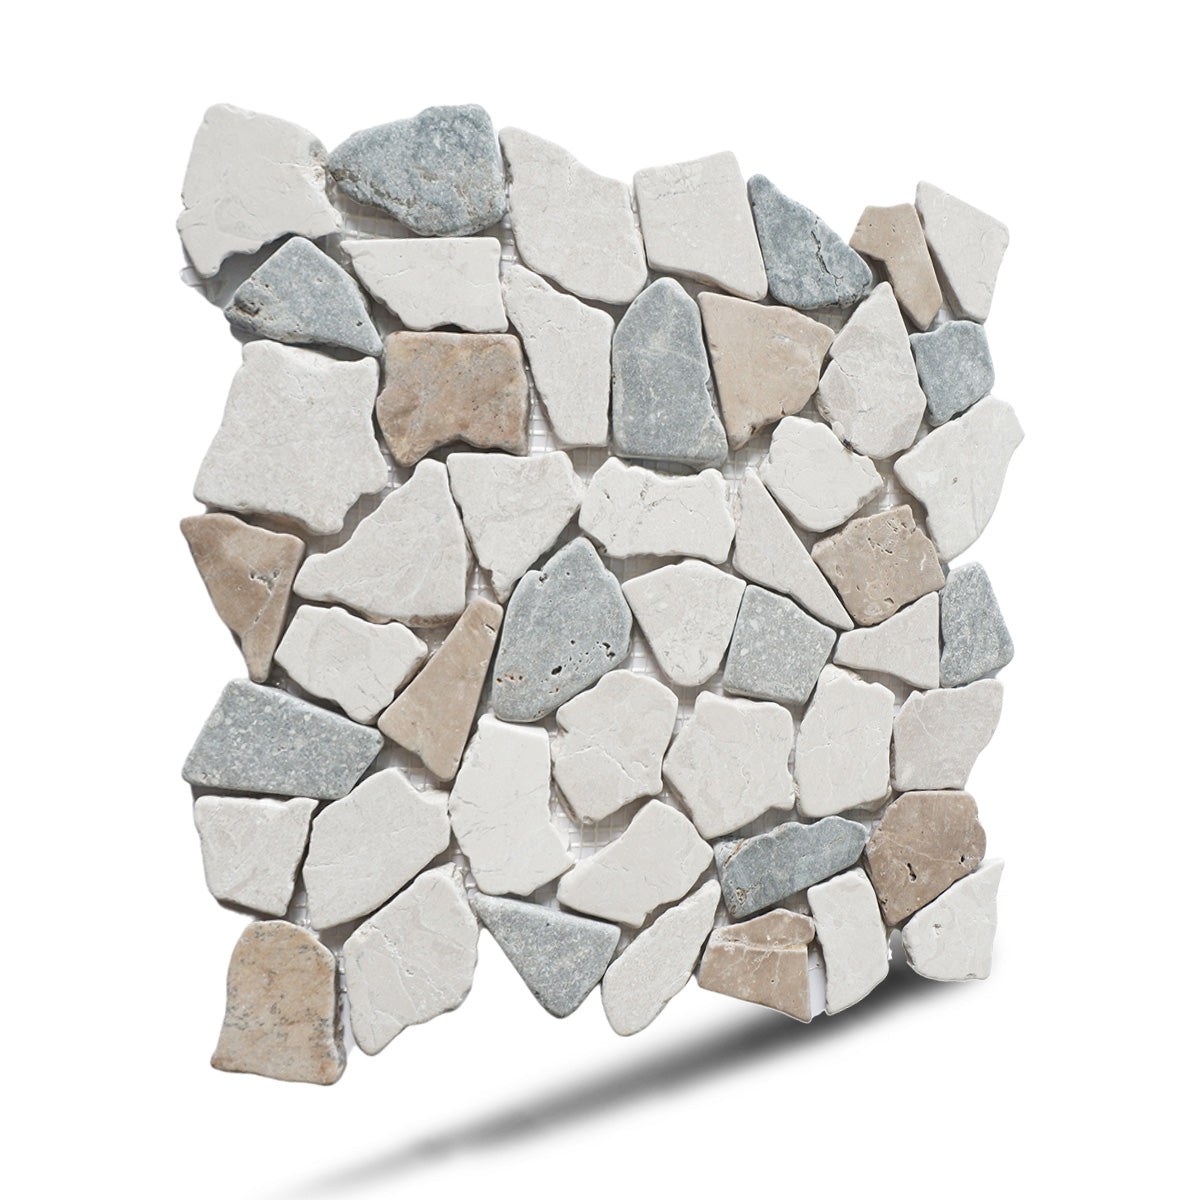 Natural Stone Mosaic Tile, Sea Sand Random Mosaic Wall Tile